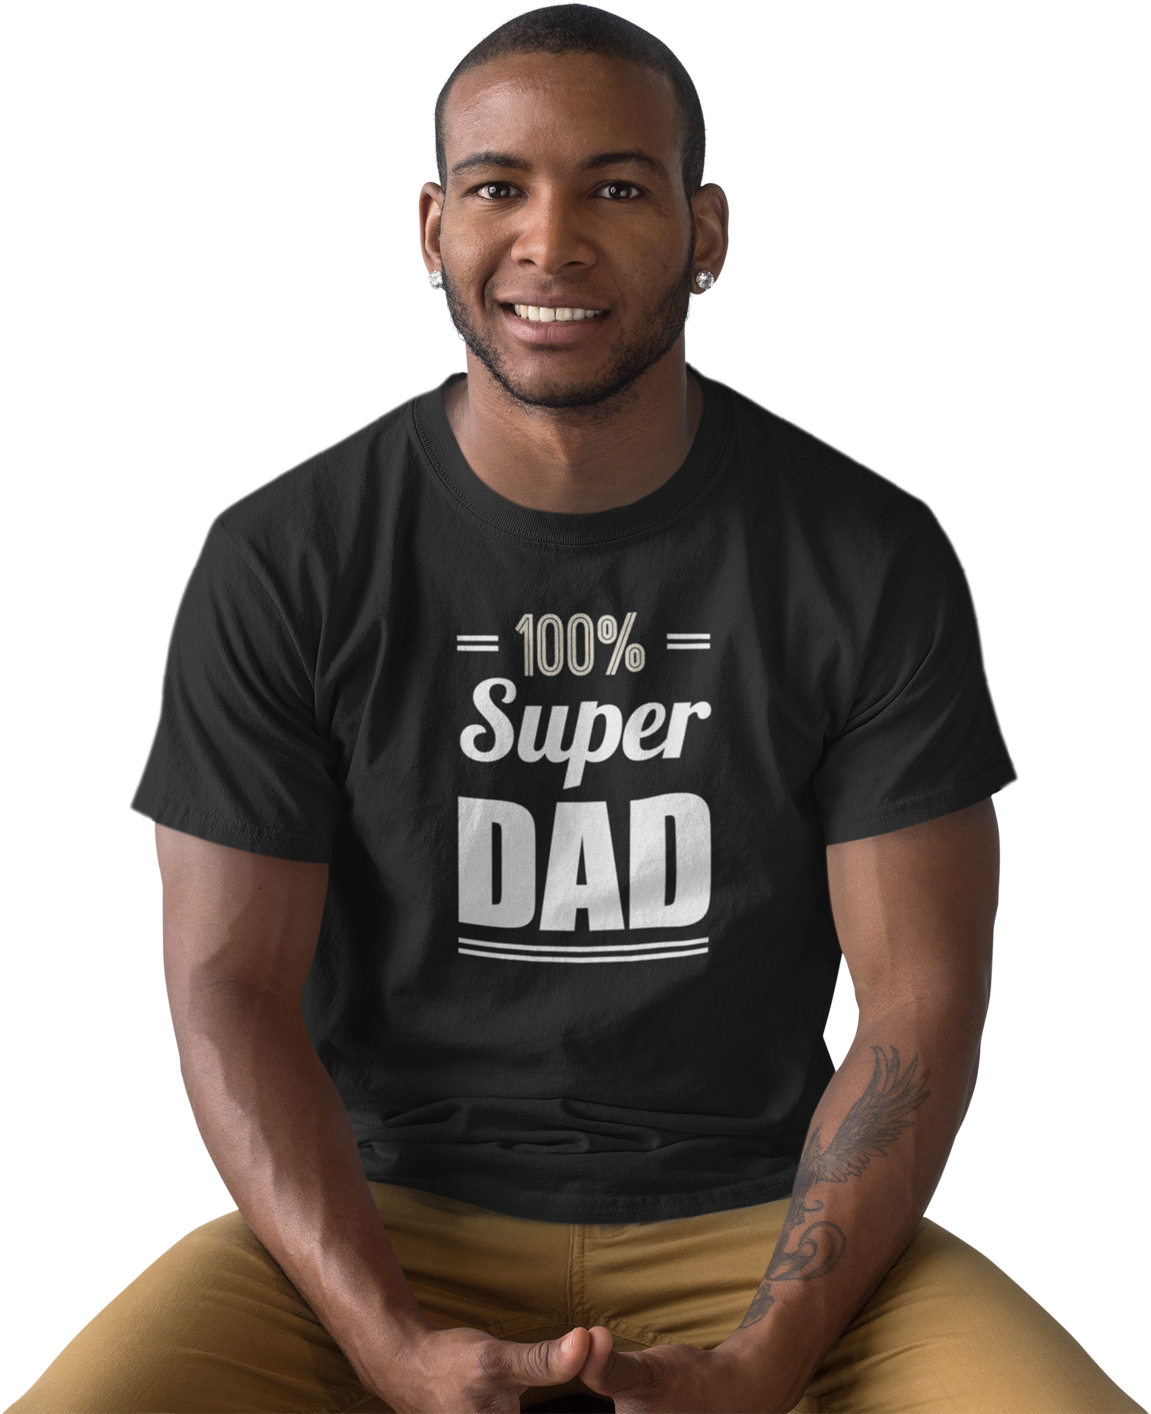 Super Dad T Shirt Man Sitting Smiling PNG